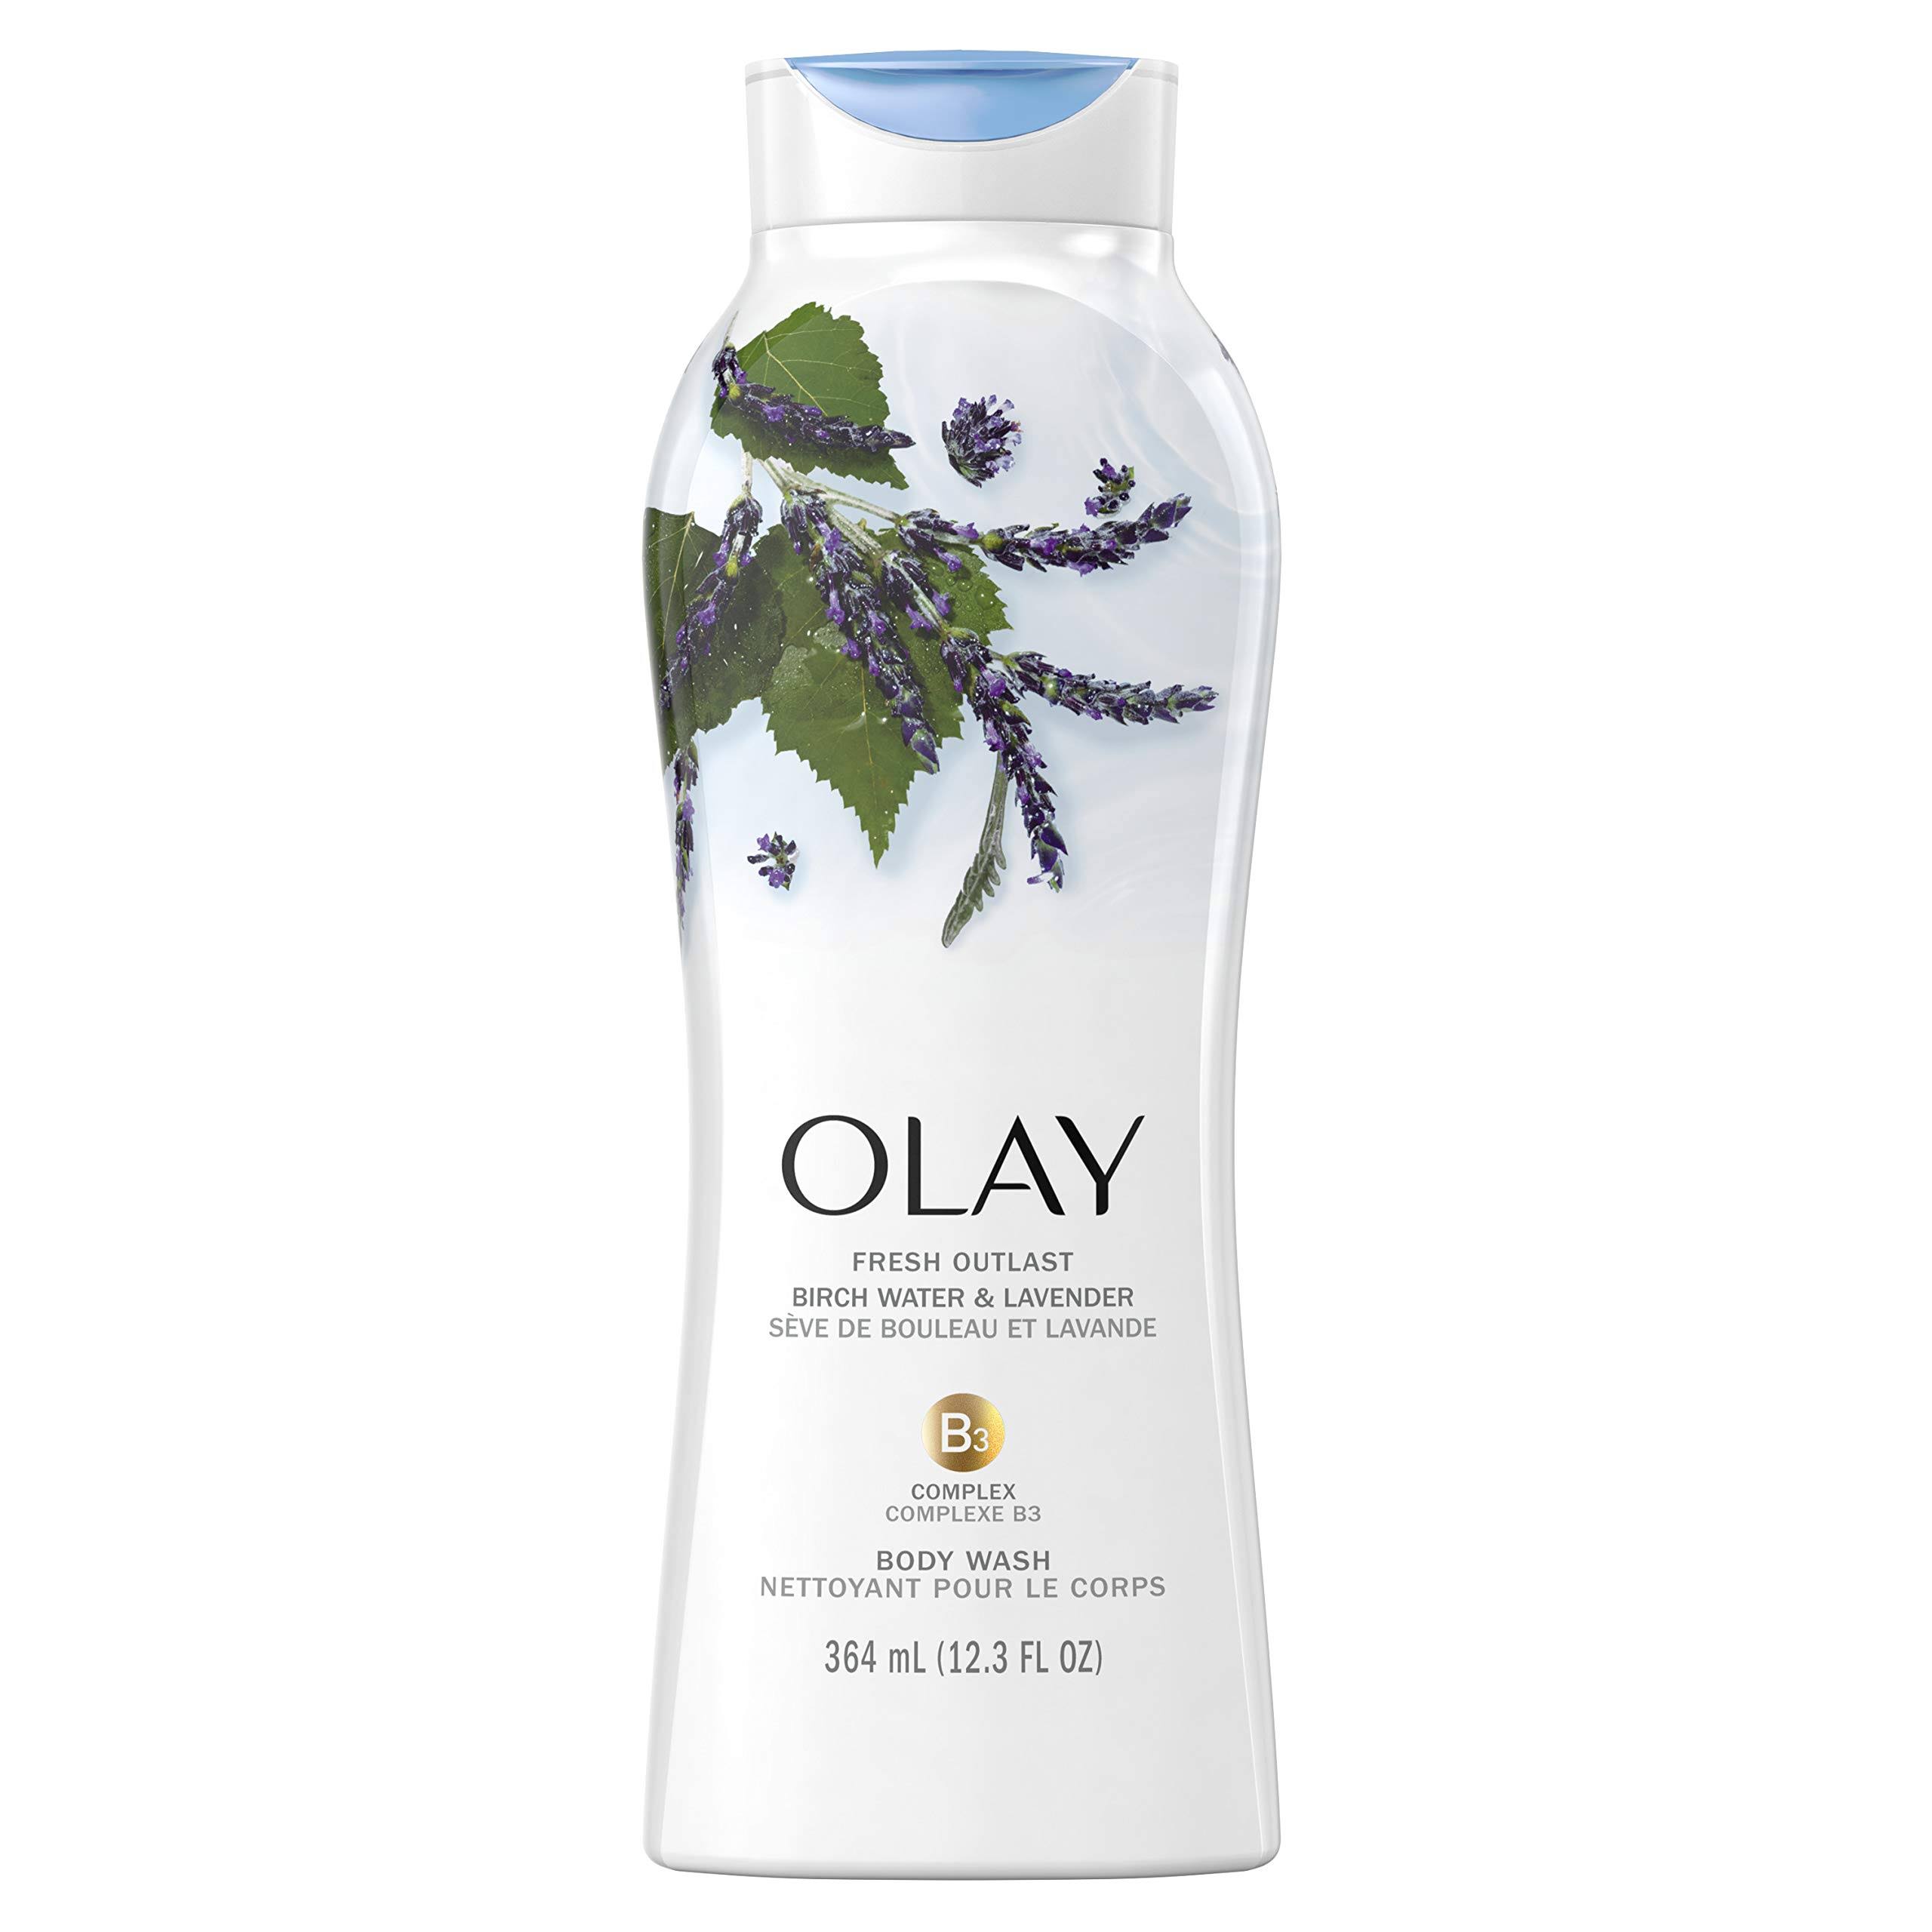 Olay Fresh Outlast Body Wash, Birch Water & Lavender, 12.3 fl oz